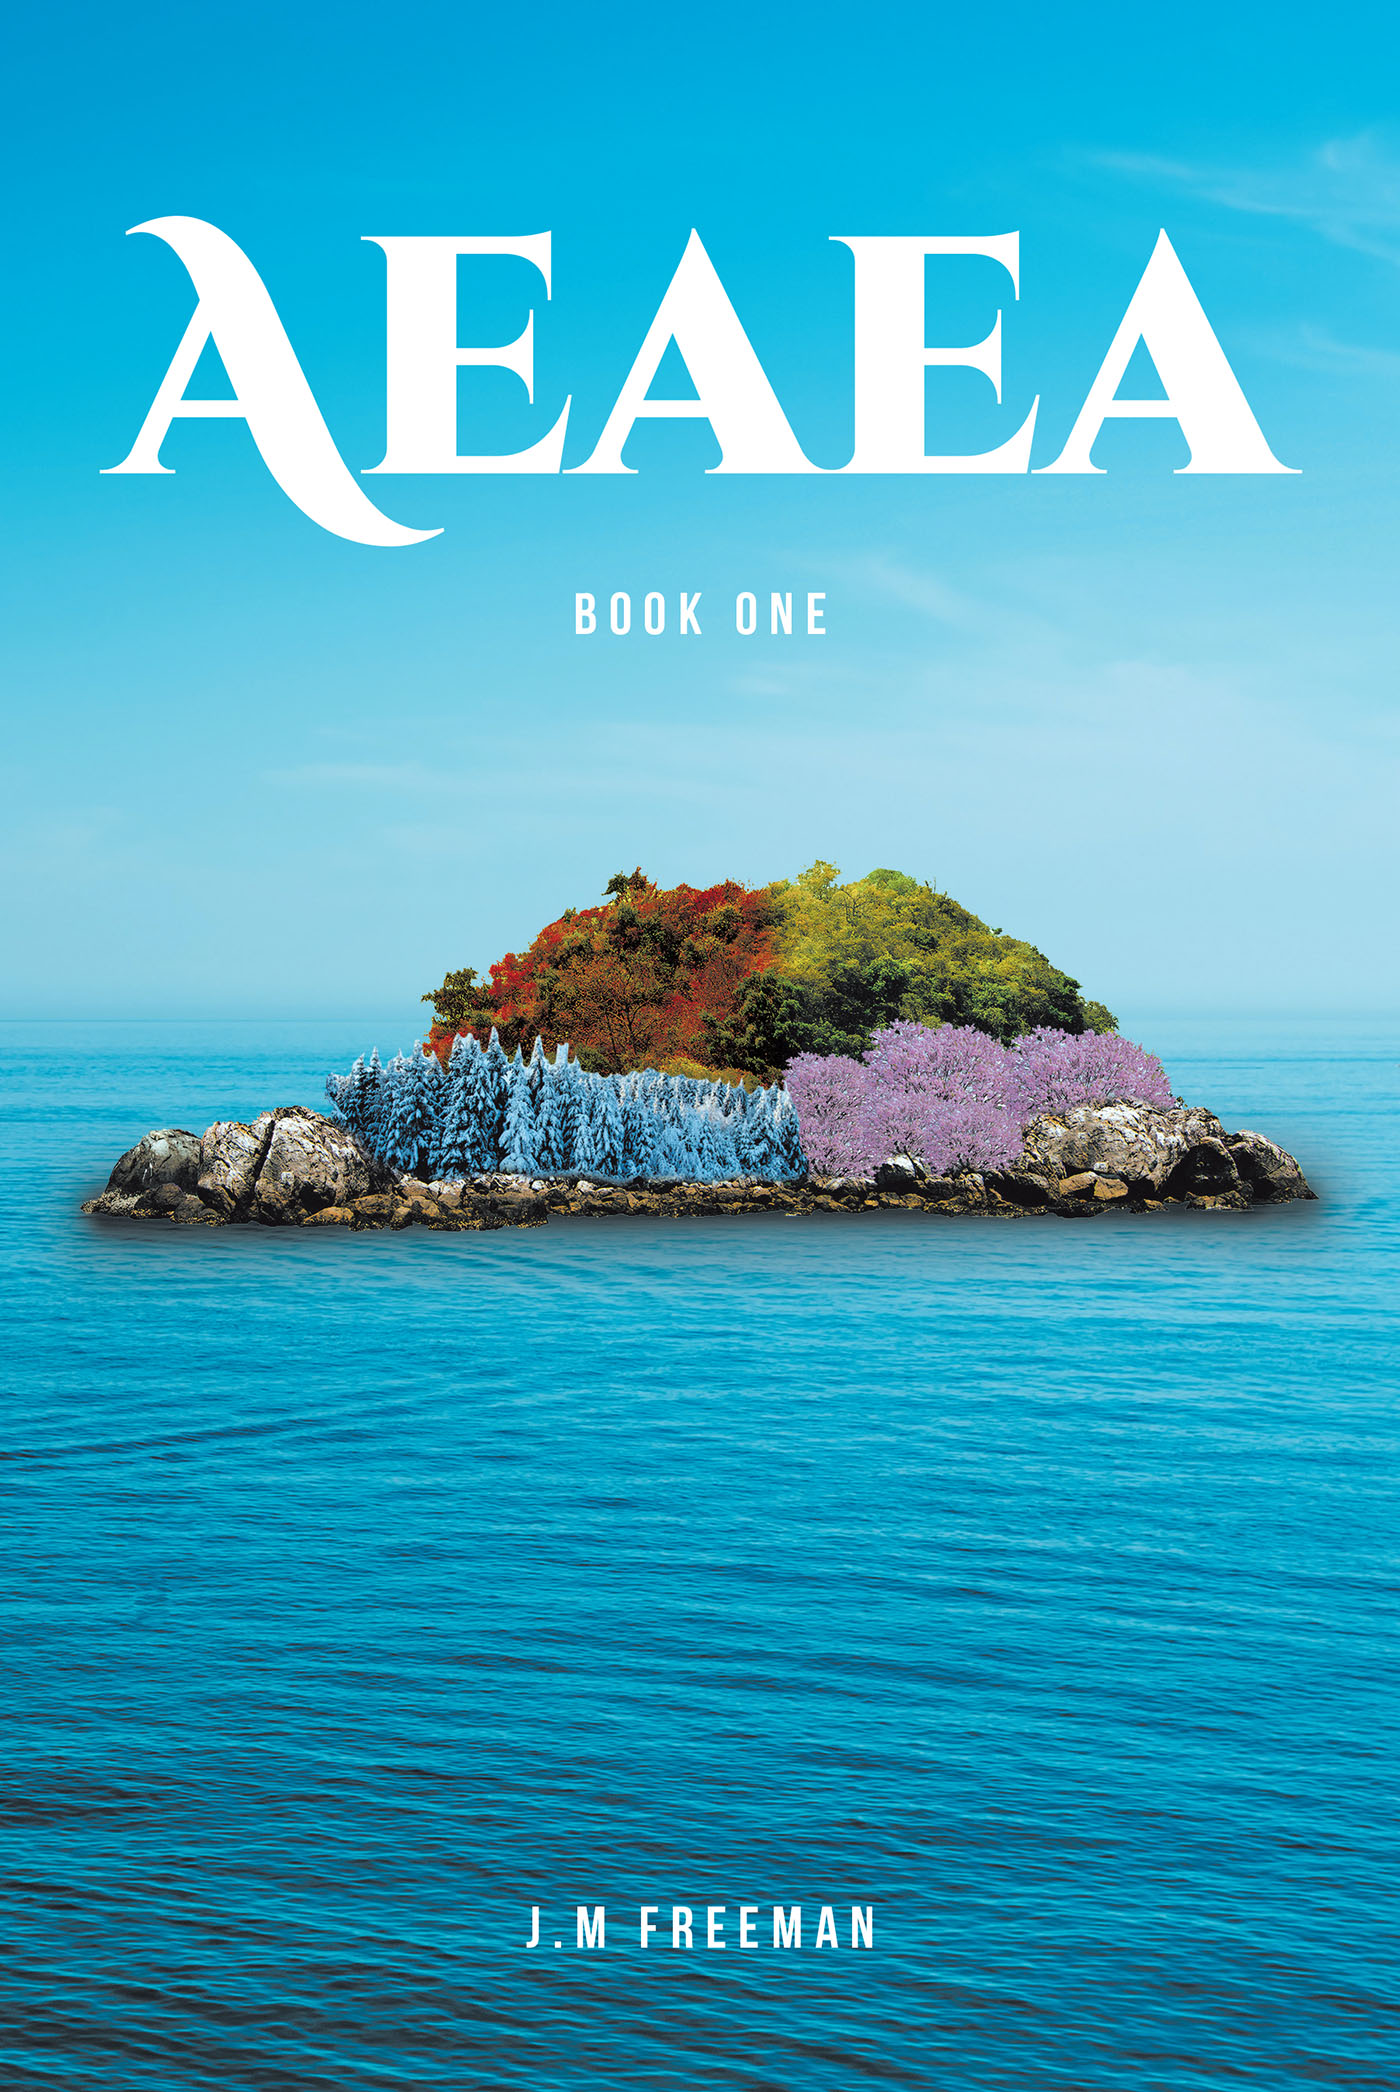 Aeaea Cover Image